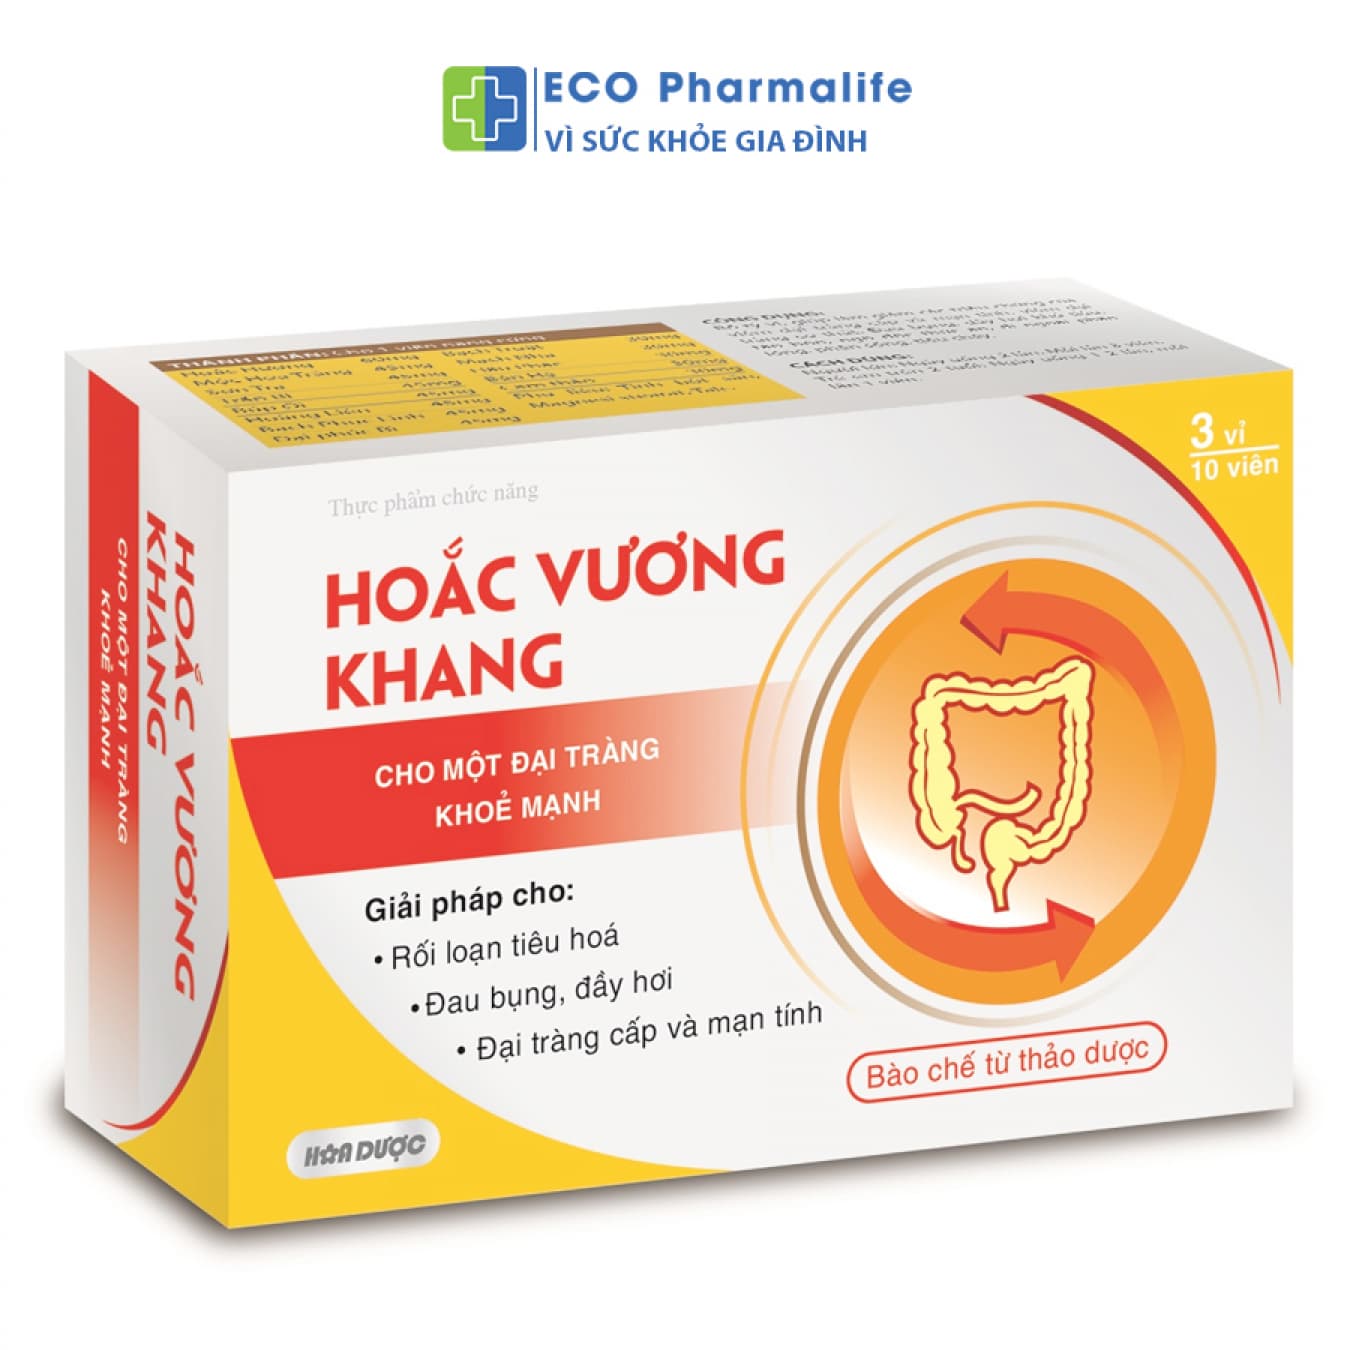 Hoắc Vương Khang - Hỗ trợ giảm viêm đại tràng, rối loạn tiêu hóa